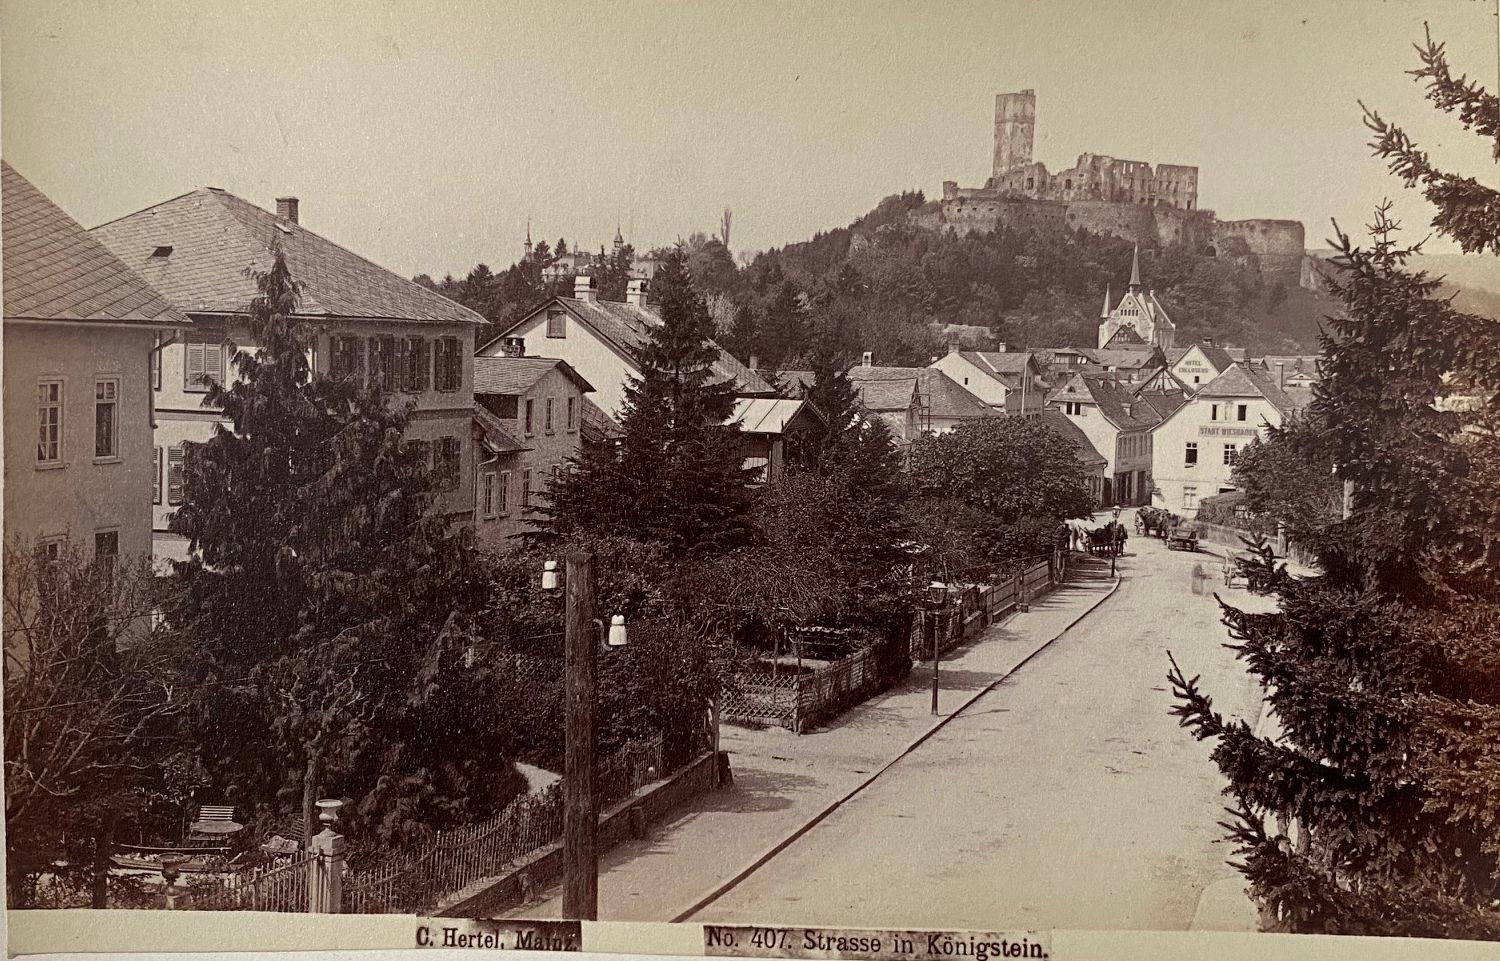 Fotografie, Carl Hertel No. 407, Königstein, ca. 1885 (Taunus-Rhein-Main - Regionalgeschichtliche Sammlung Dr. Stefan Naas CC BY-NC-SA)